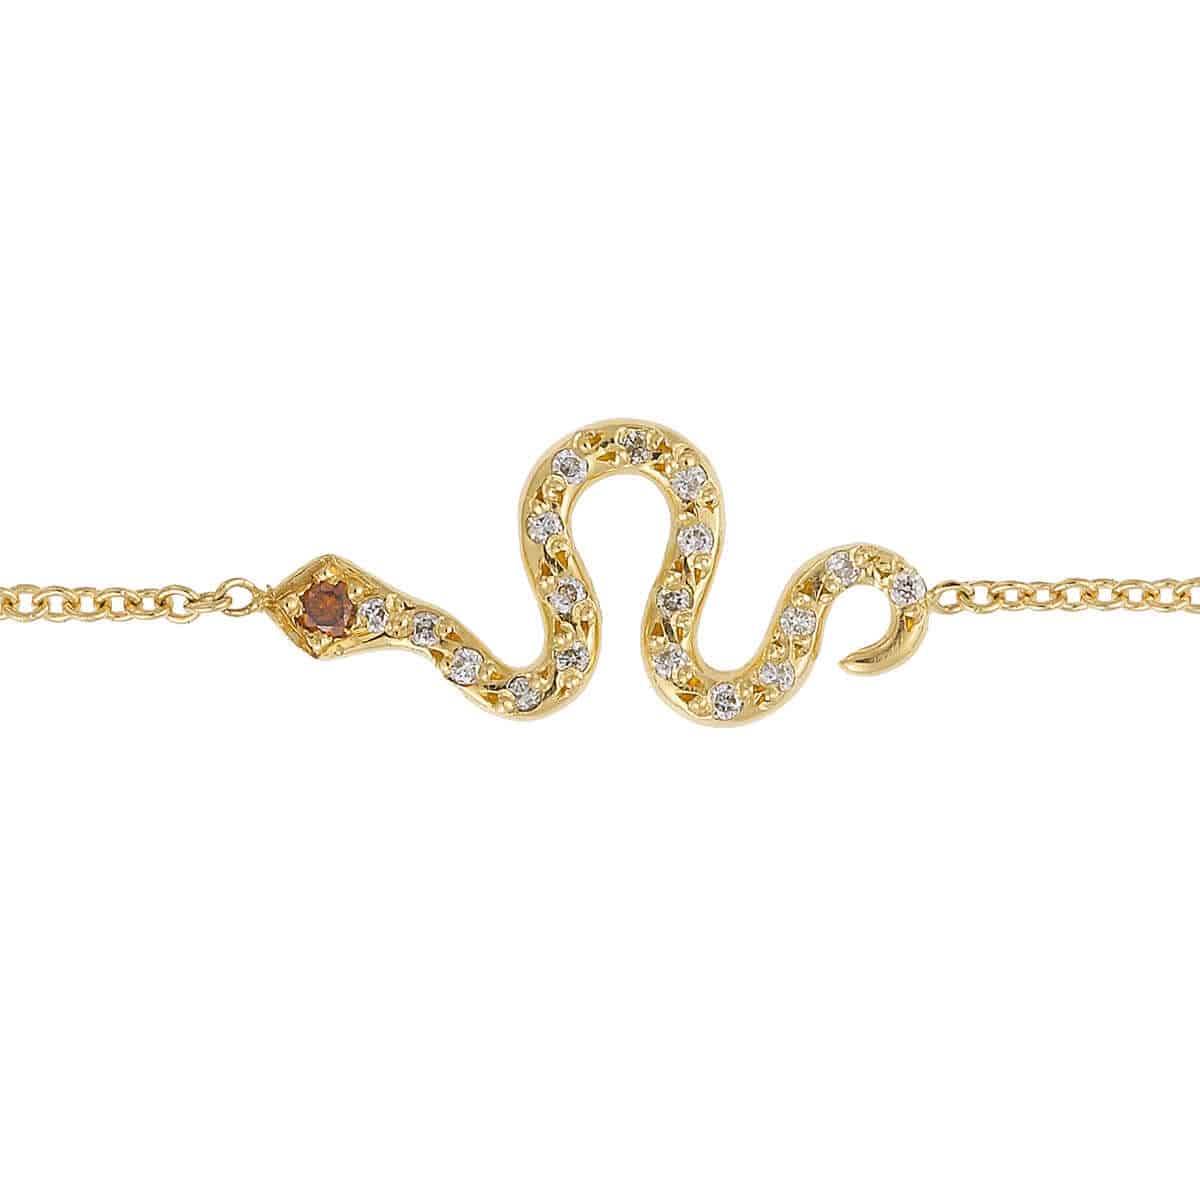 Little Snake Bracelet Y-D-Bur - SNAKES - Ileana Makri store